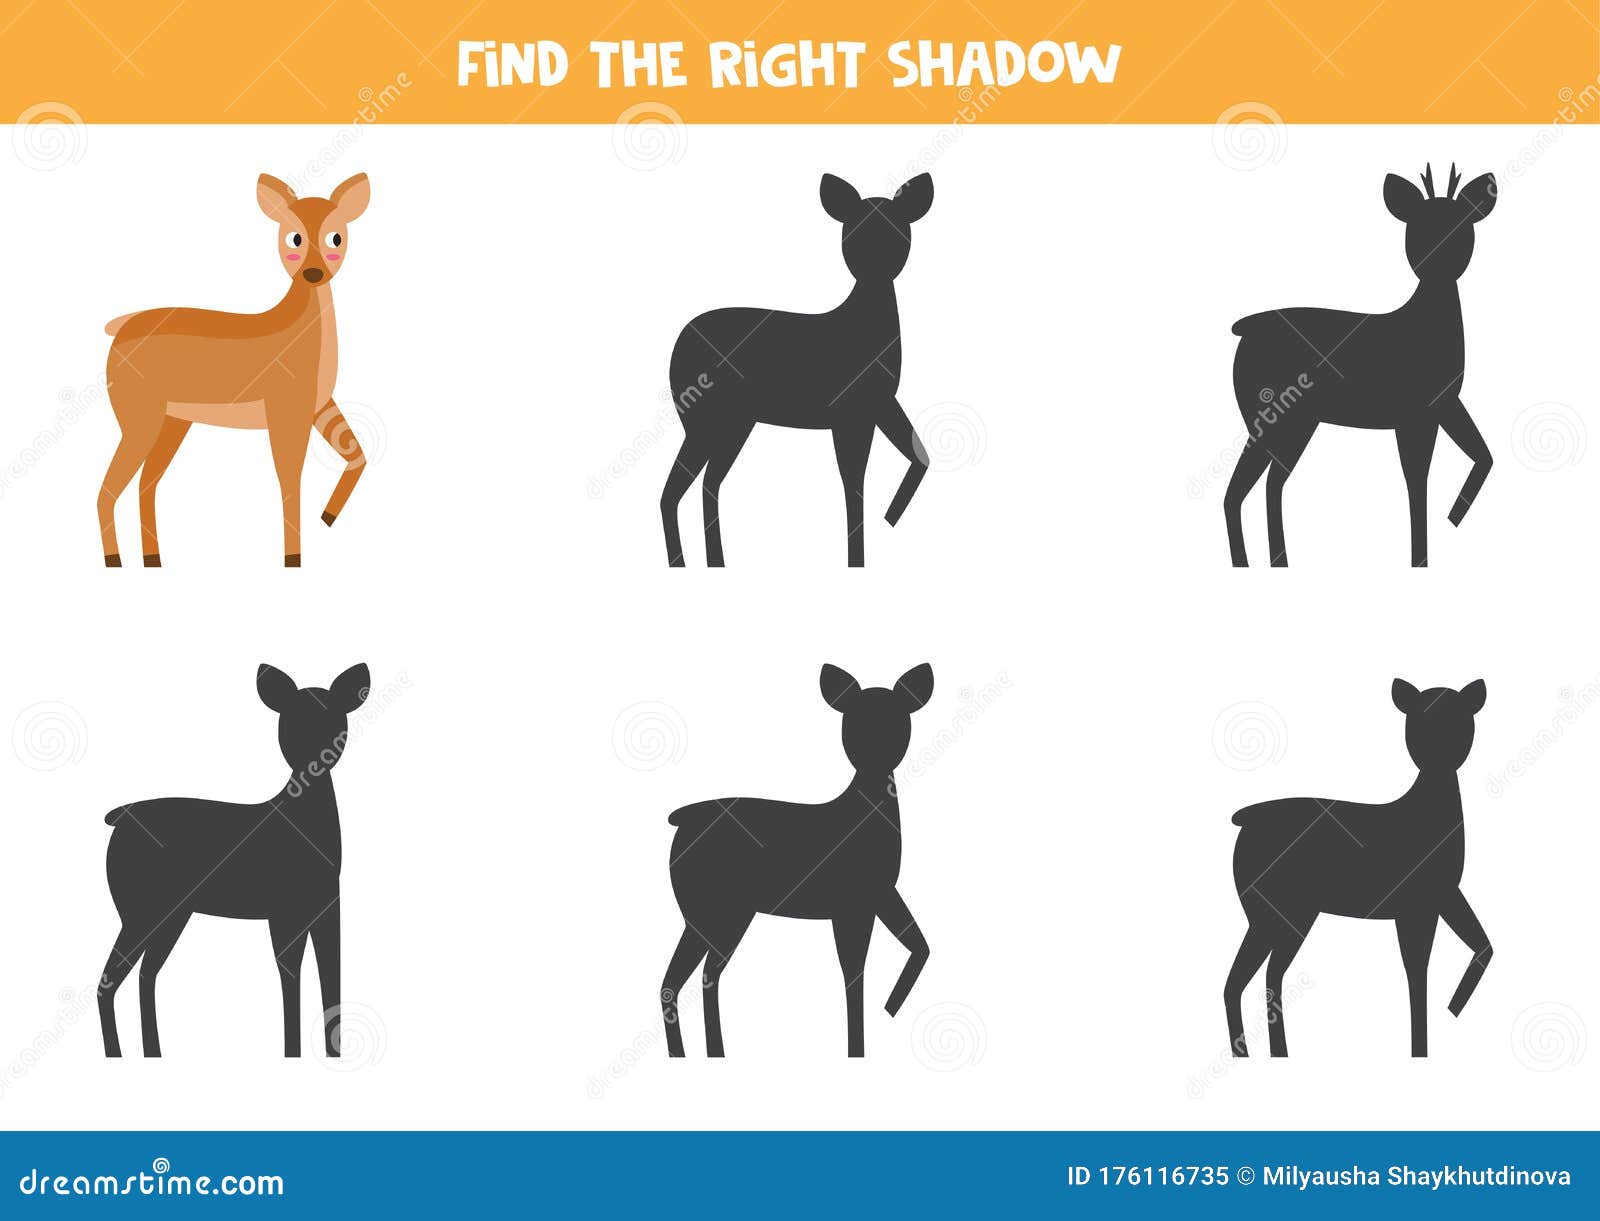 Encontre a sombra certa .. jogos educativos. jogos de lógica para chi